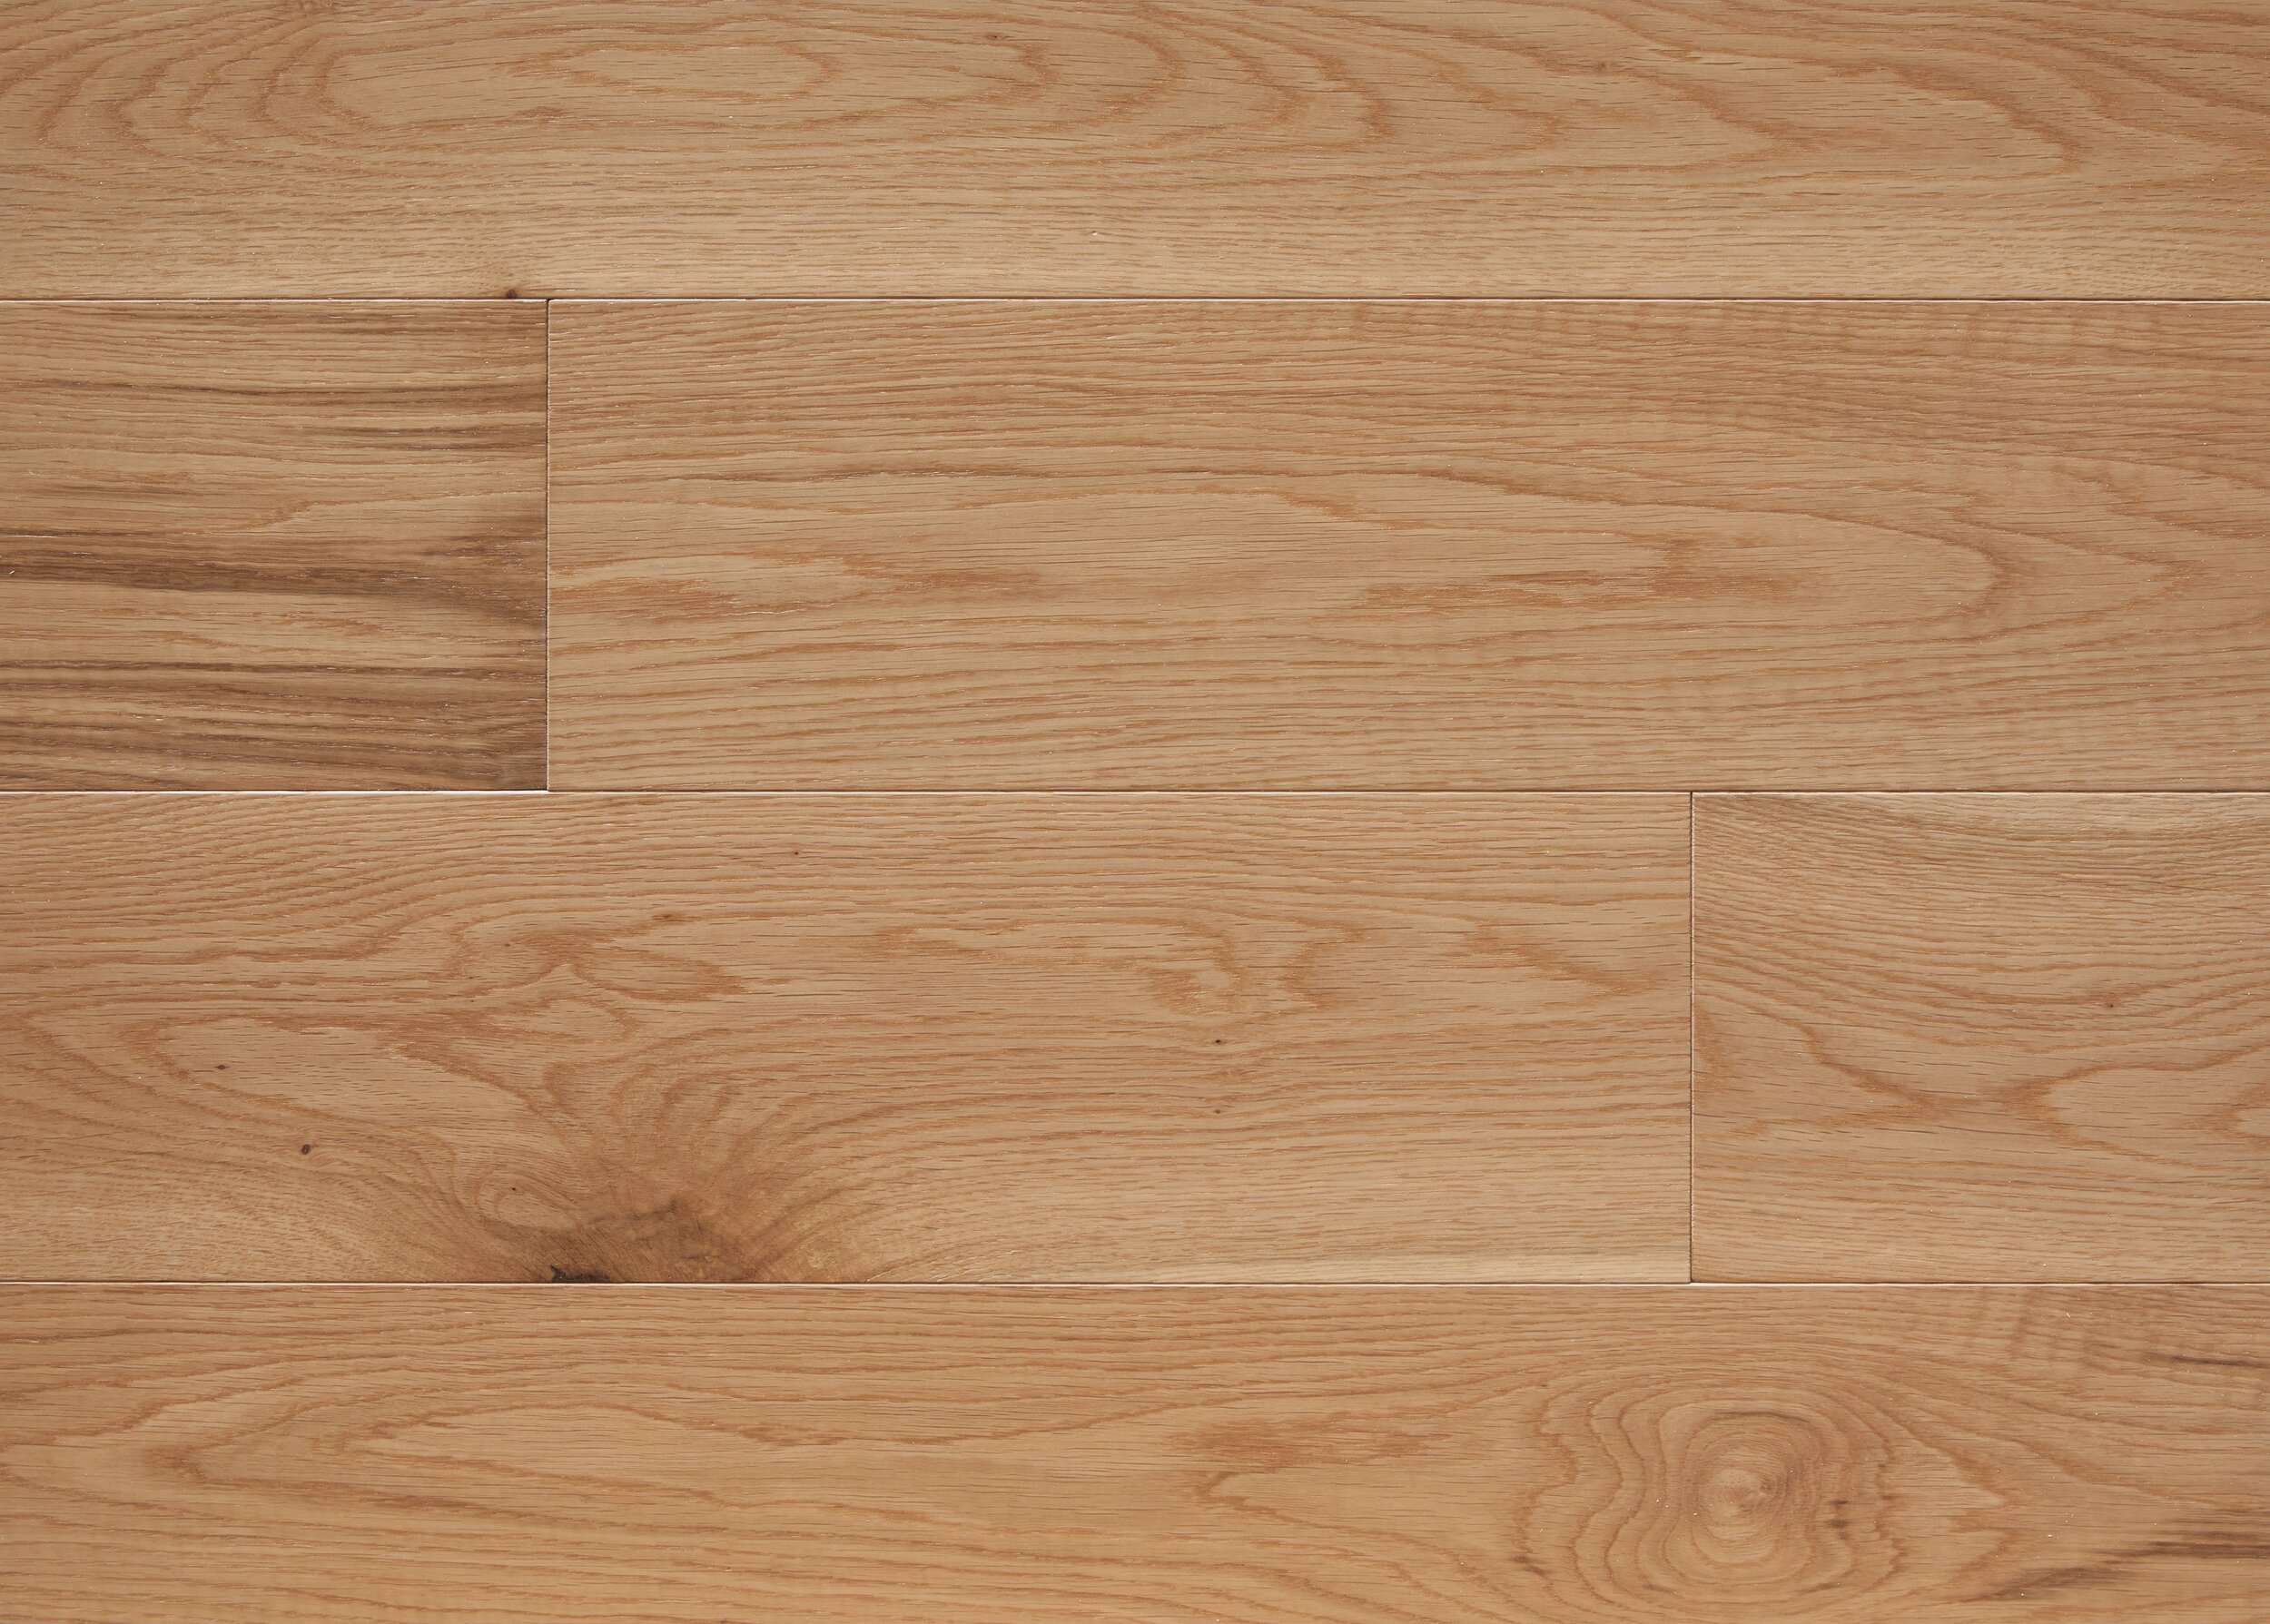 Popular Hardwood Flooring Species, Most Common Hardwood Floor